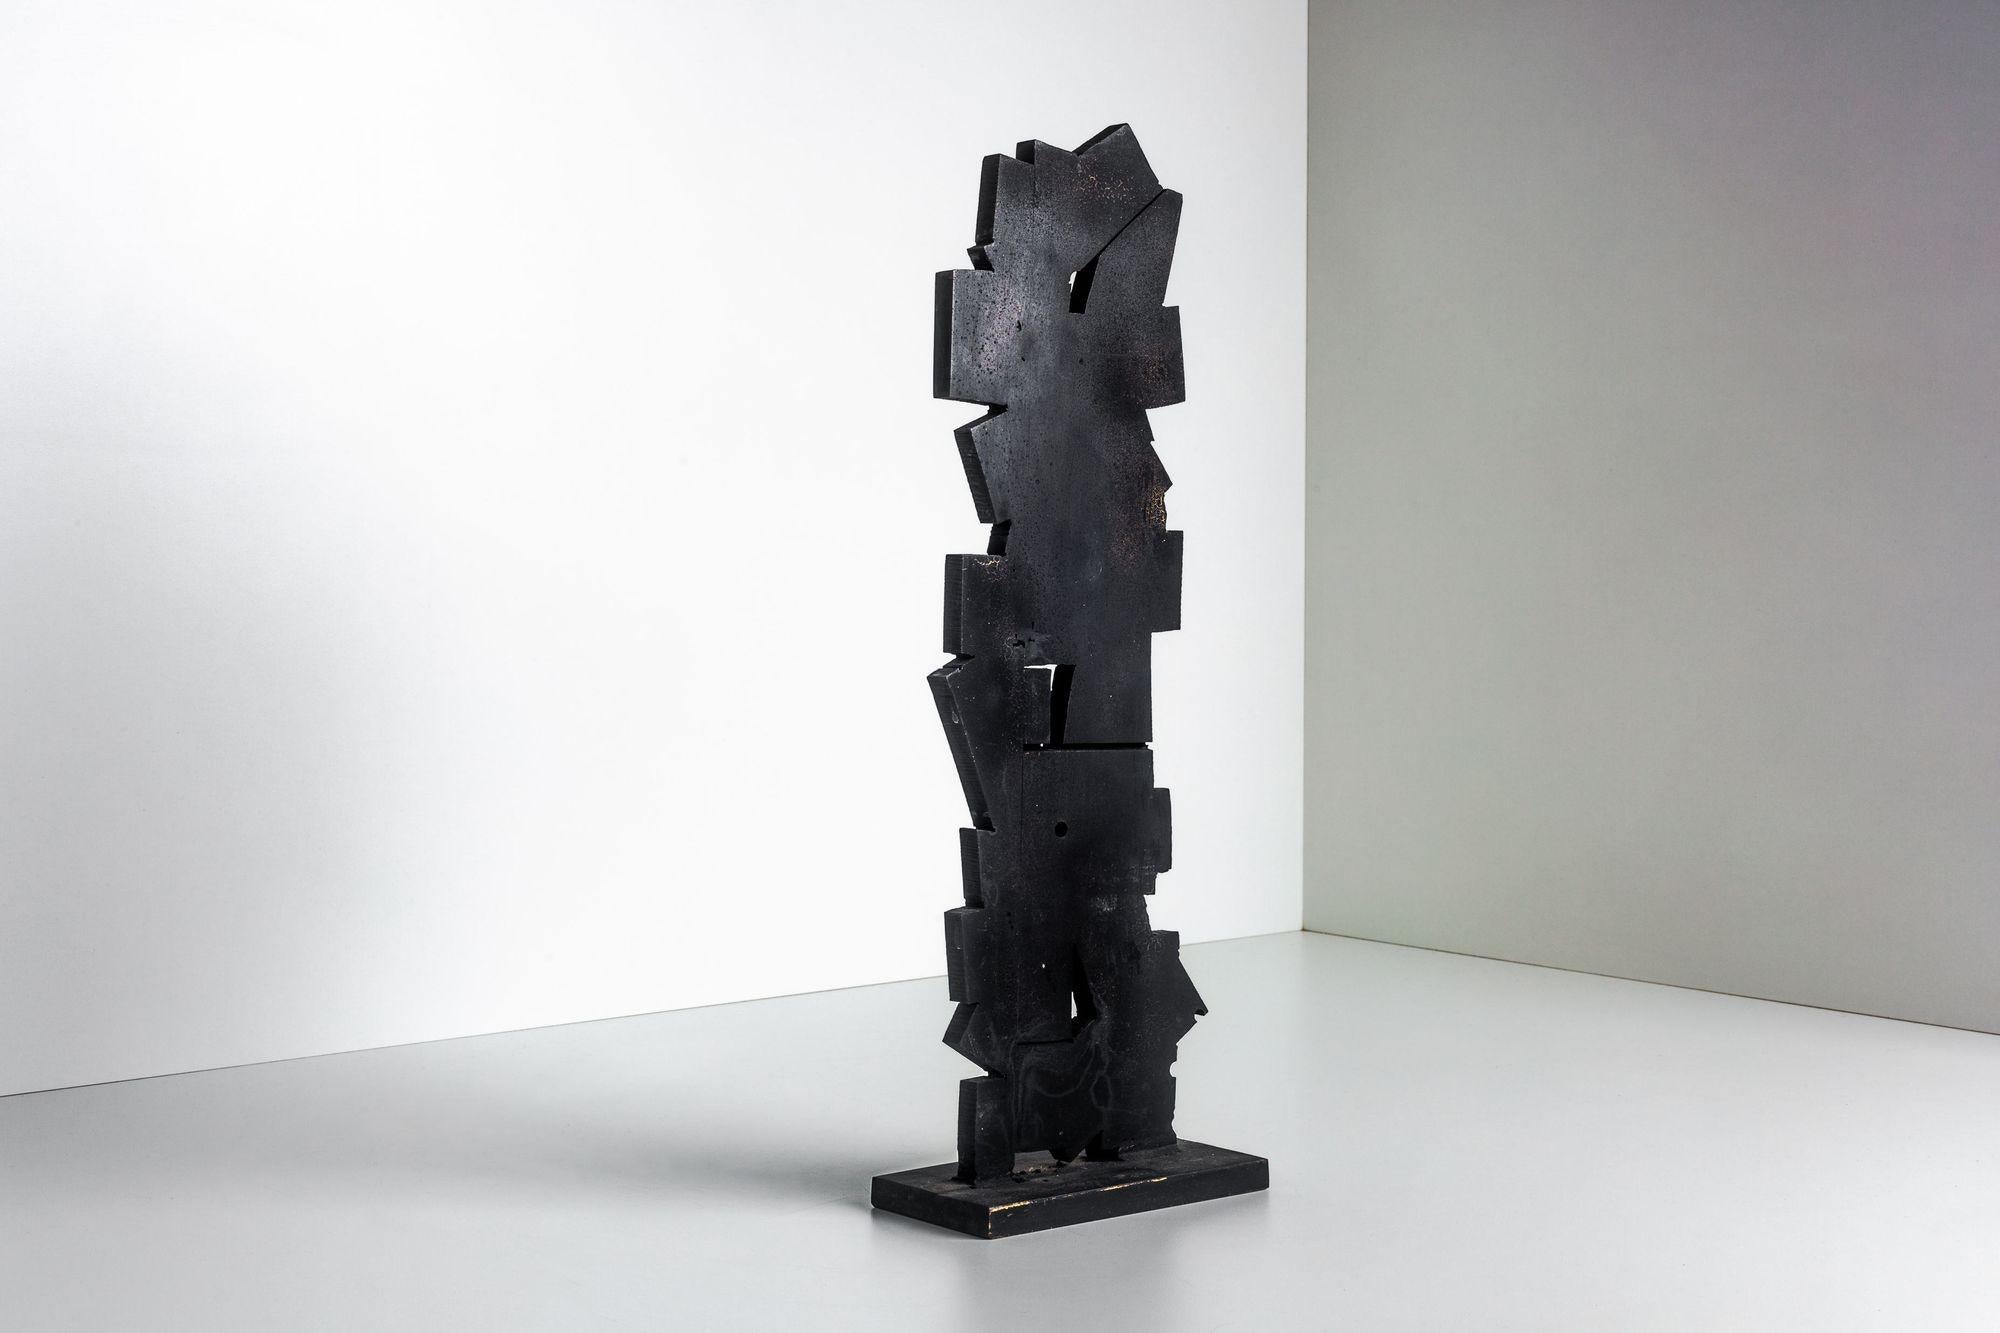 Tony Rosenthal Tisch-Bronze-Skulptur

Unbetitelt. Vertikal ausgerichtete, schwarz lackierte Bronzeskulptur mit drei inneren Hohlräumen mit unregelmäßigen Kanten, auf Sockel geschweißt, signiert, um 1998.

Aus der Estate Collection von Tony